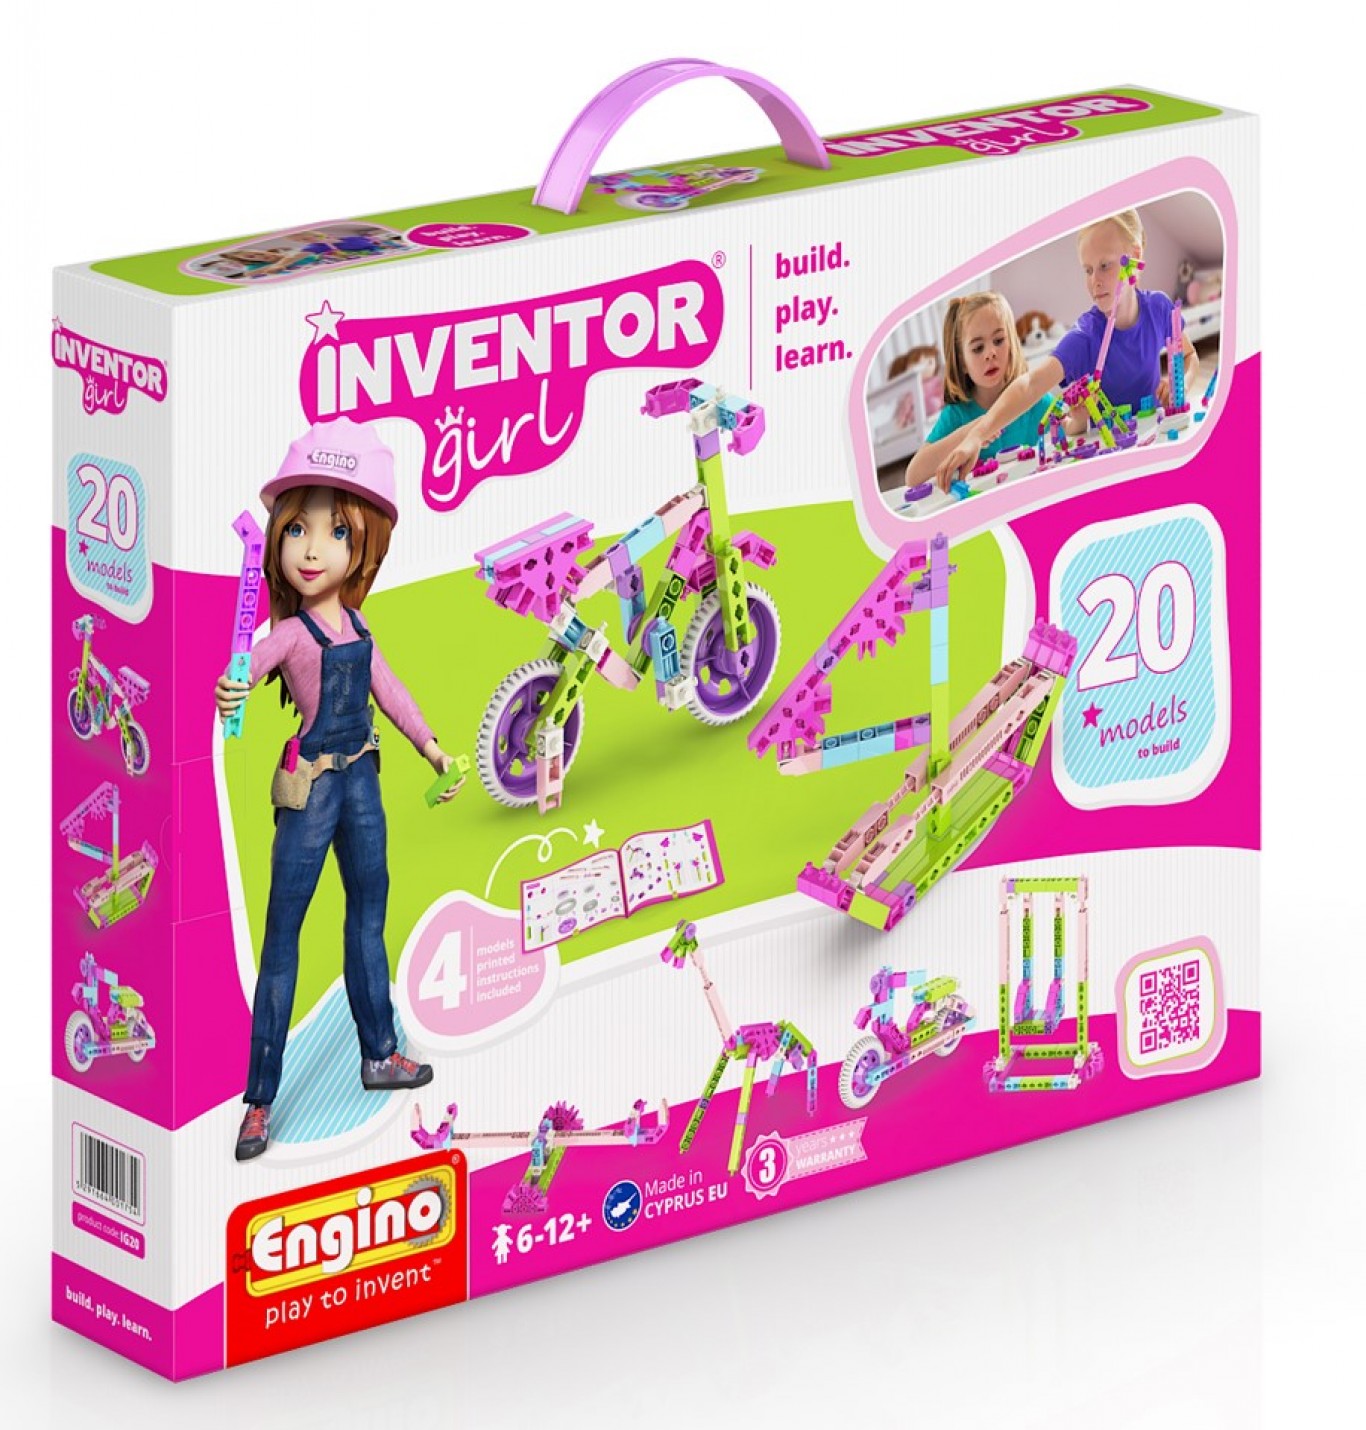 EN INVENTOR GIRLS 20 MODELS IG20 - Wild Willy - Toys Lebanon